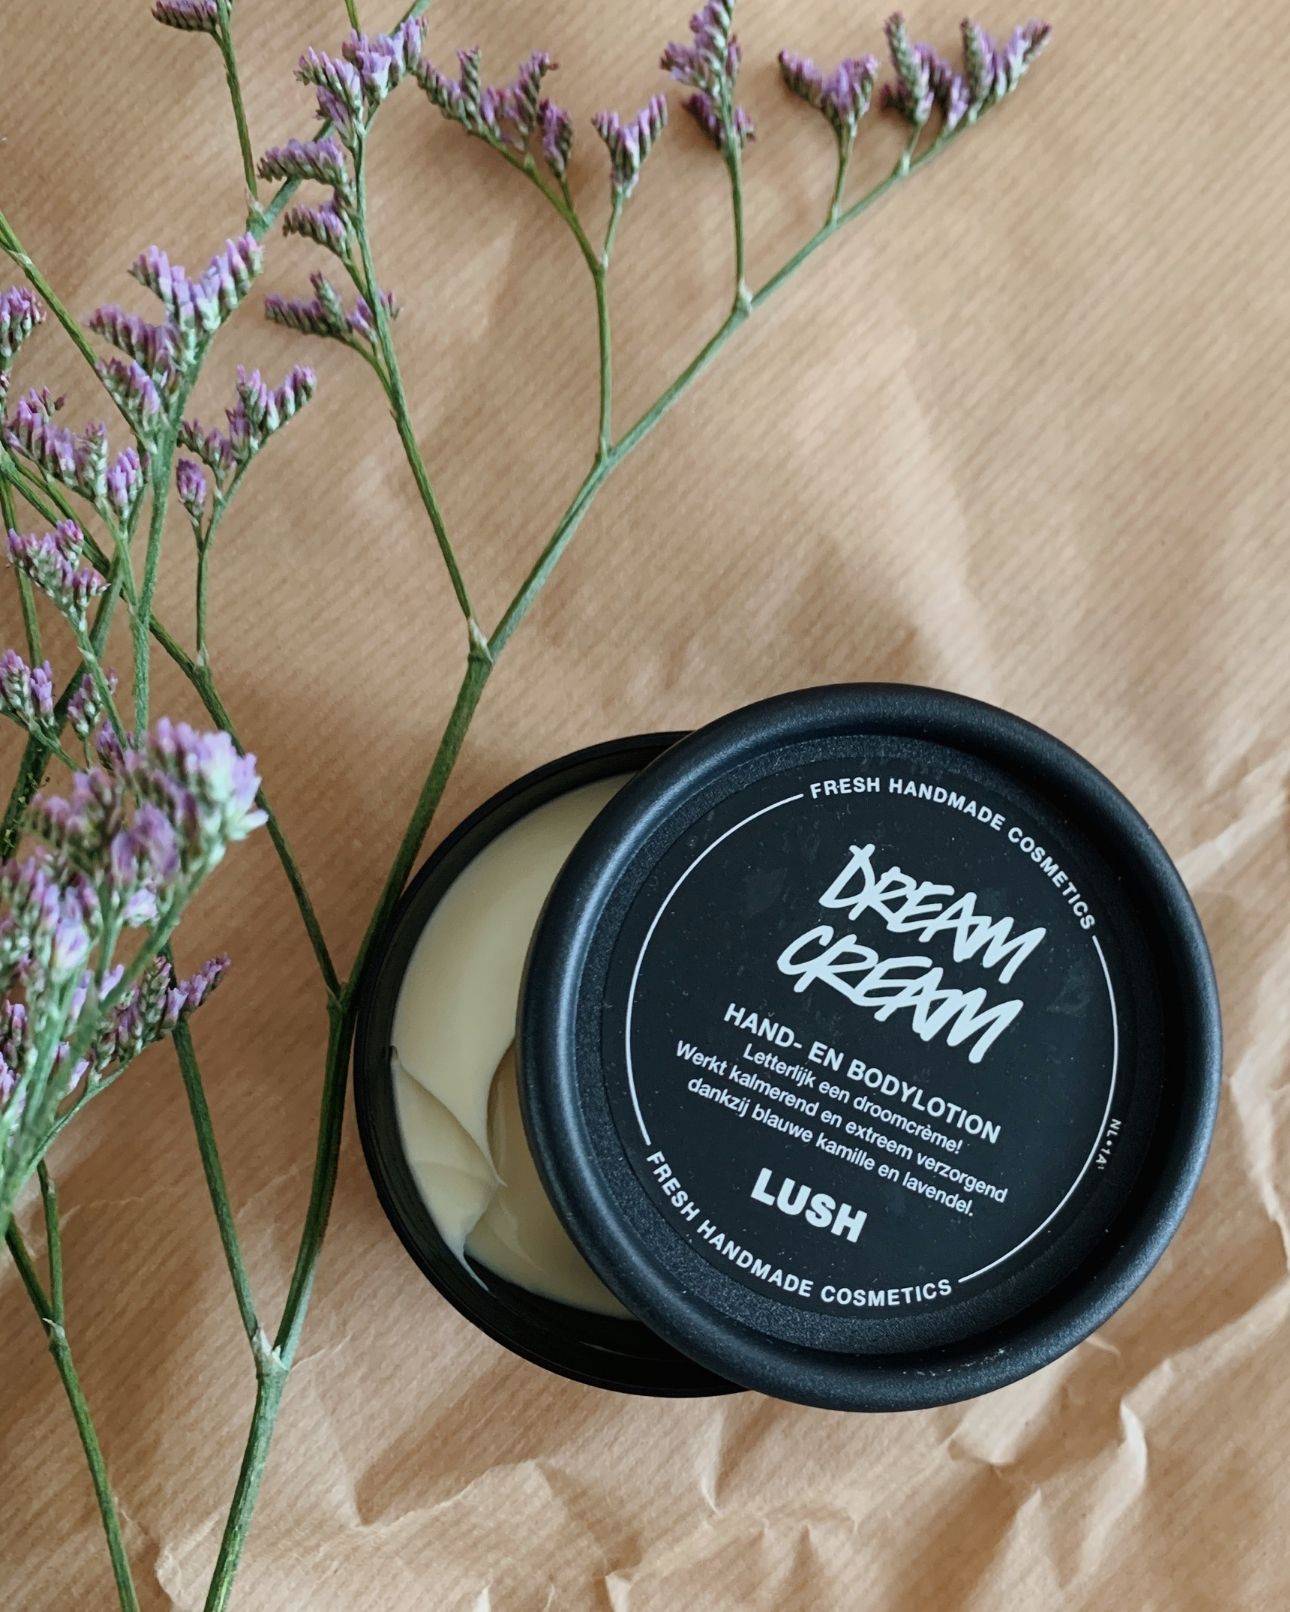 Lush dream cream